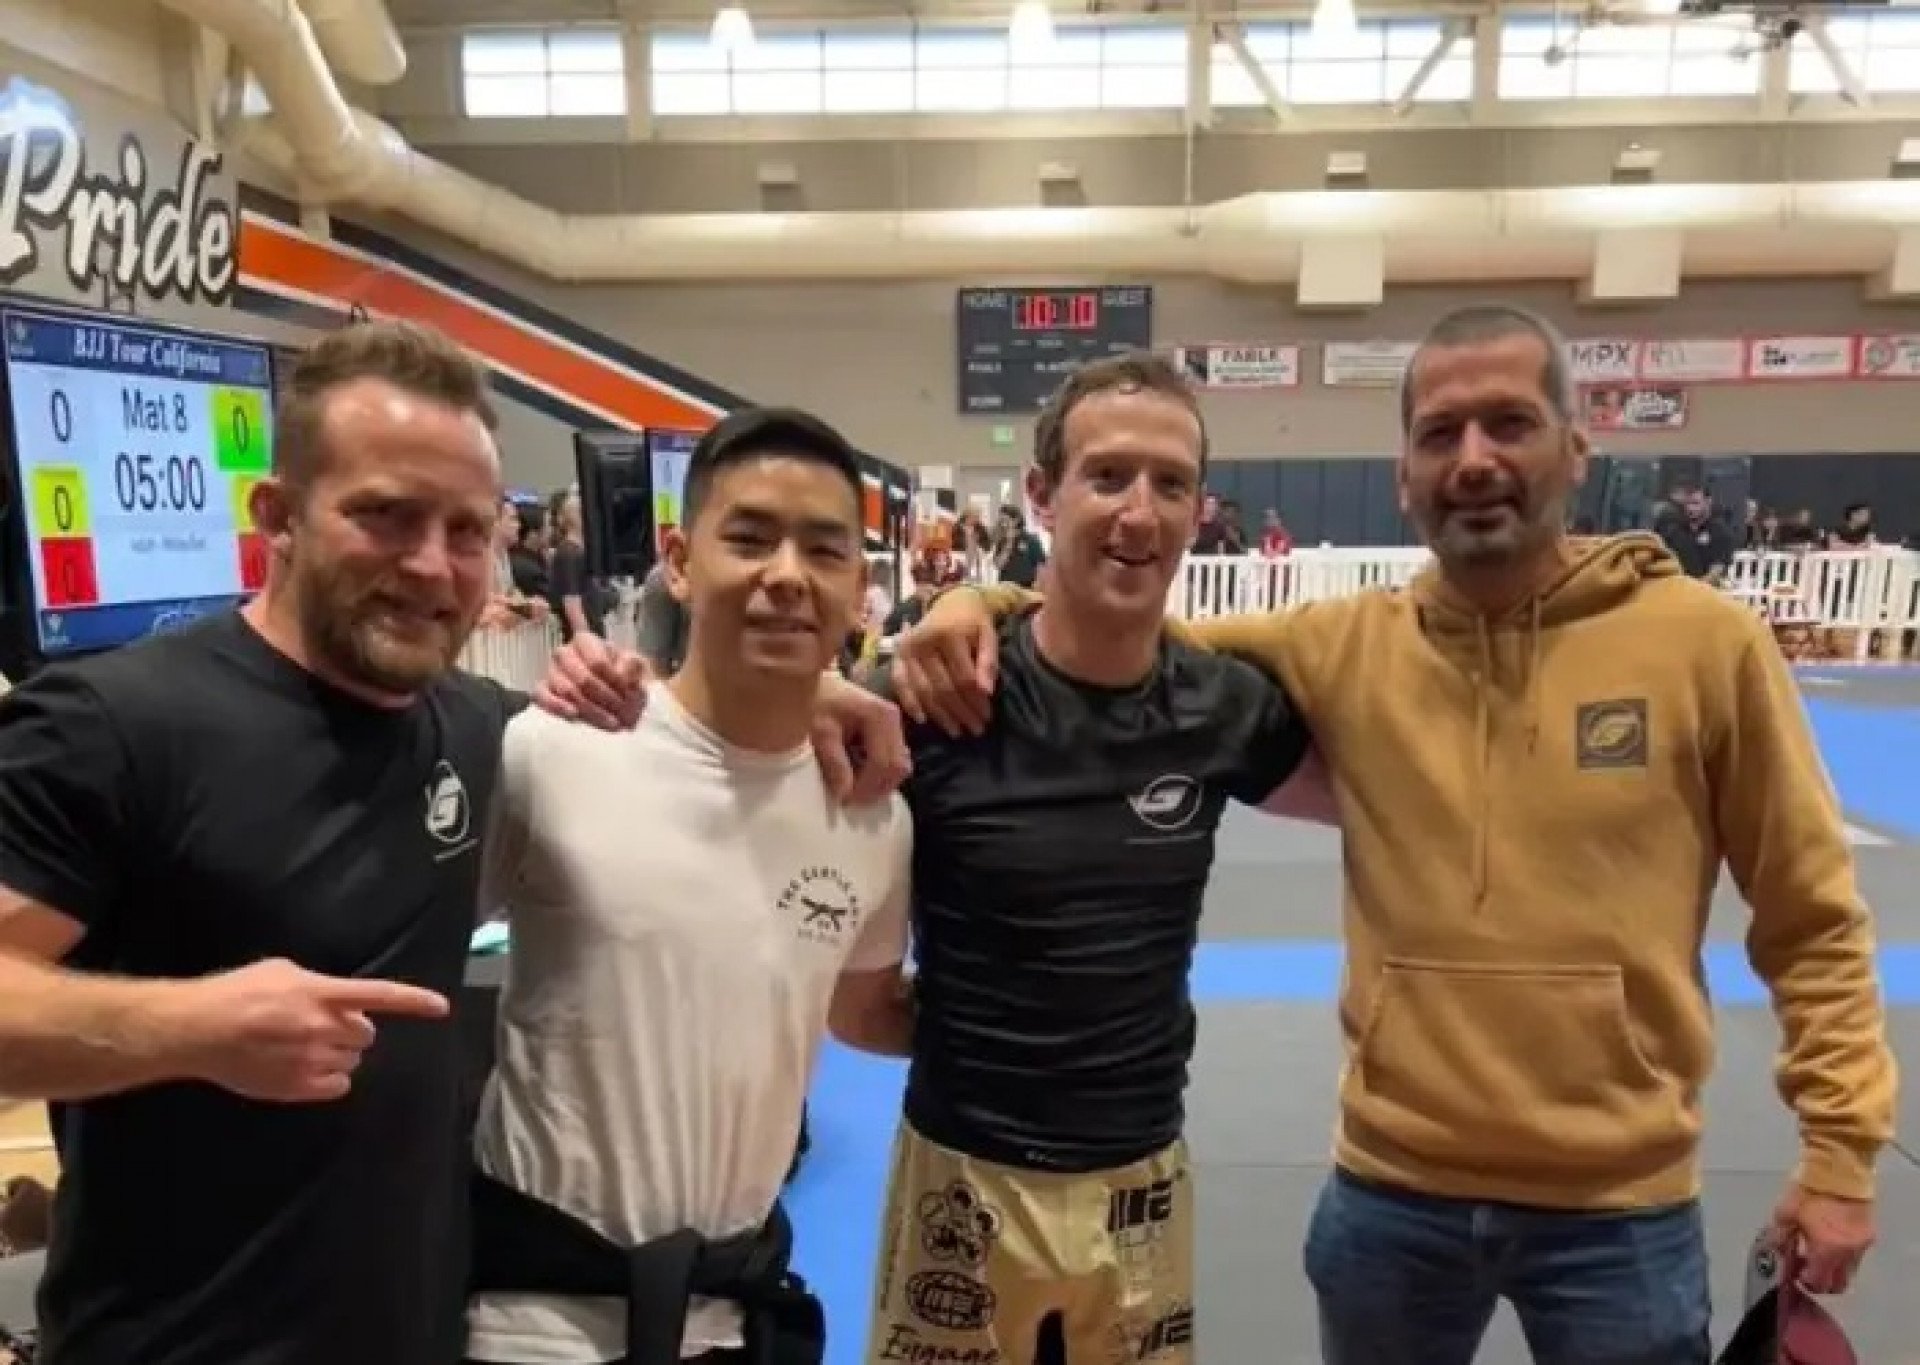 Mark com a equipe Guerrilla Jiu-Jitsu - (Foto: Reprodução Instagram)